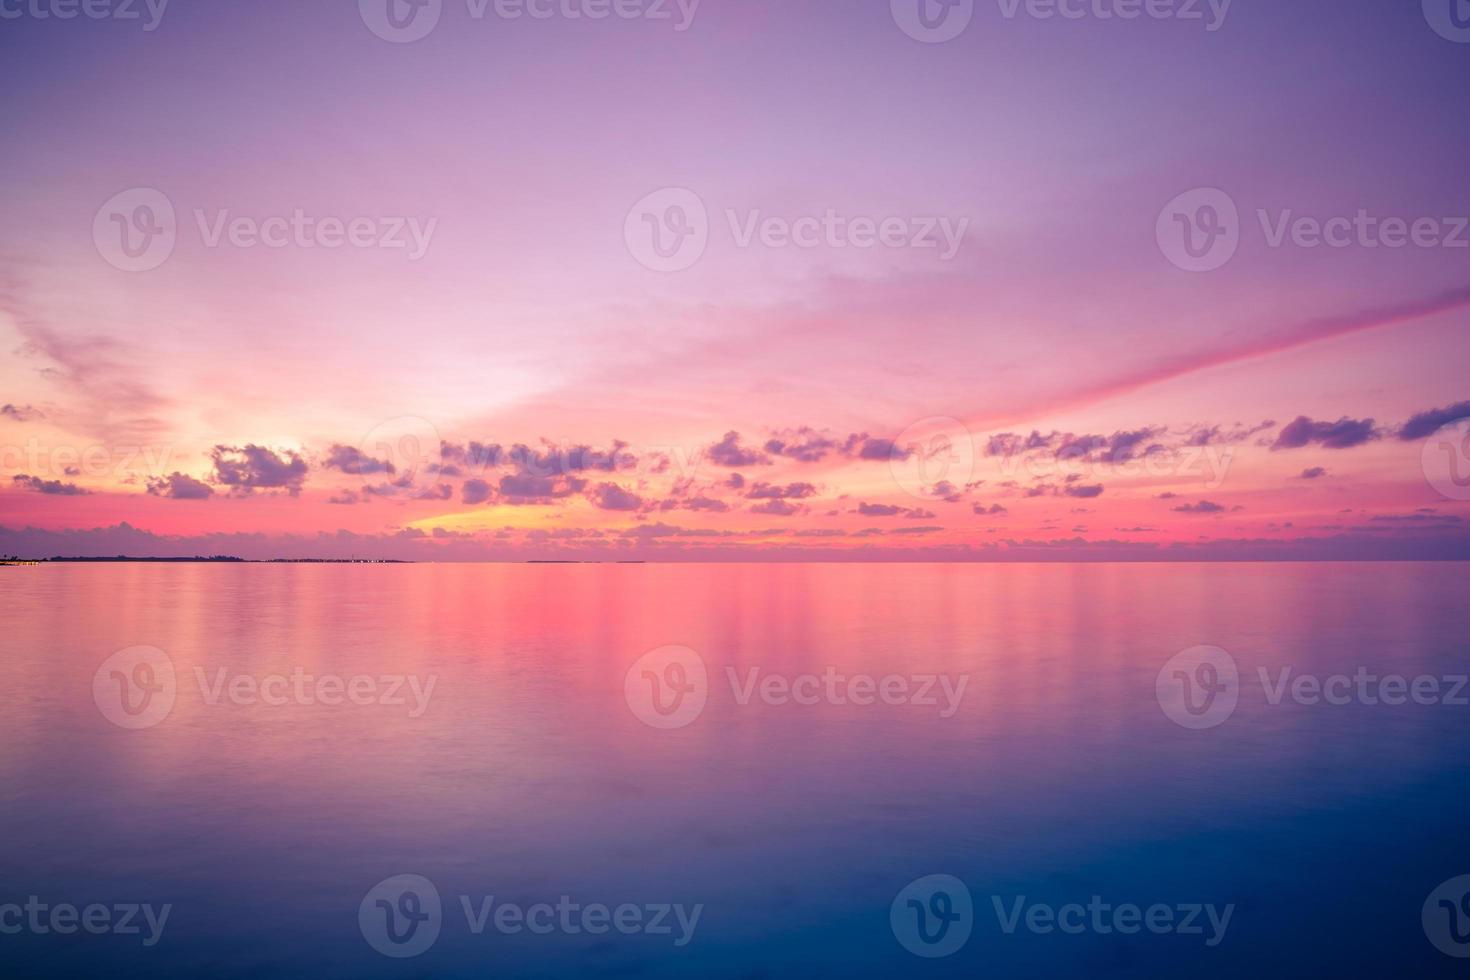 Herrlicher Blick auf den Sonnenuntergang am Meer, heller Horizont. inspirierend schöner strand und meerblick, reflexion. bunte Abendseelandschaft - Himmelslandschaft. Zen-Naturkonzept, Ruhe, Entspannung foto